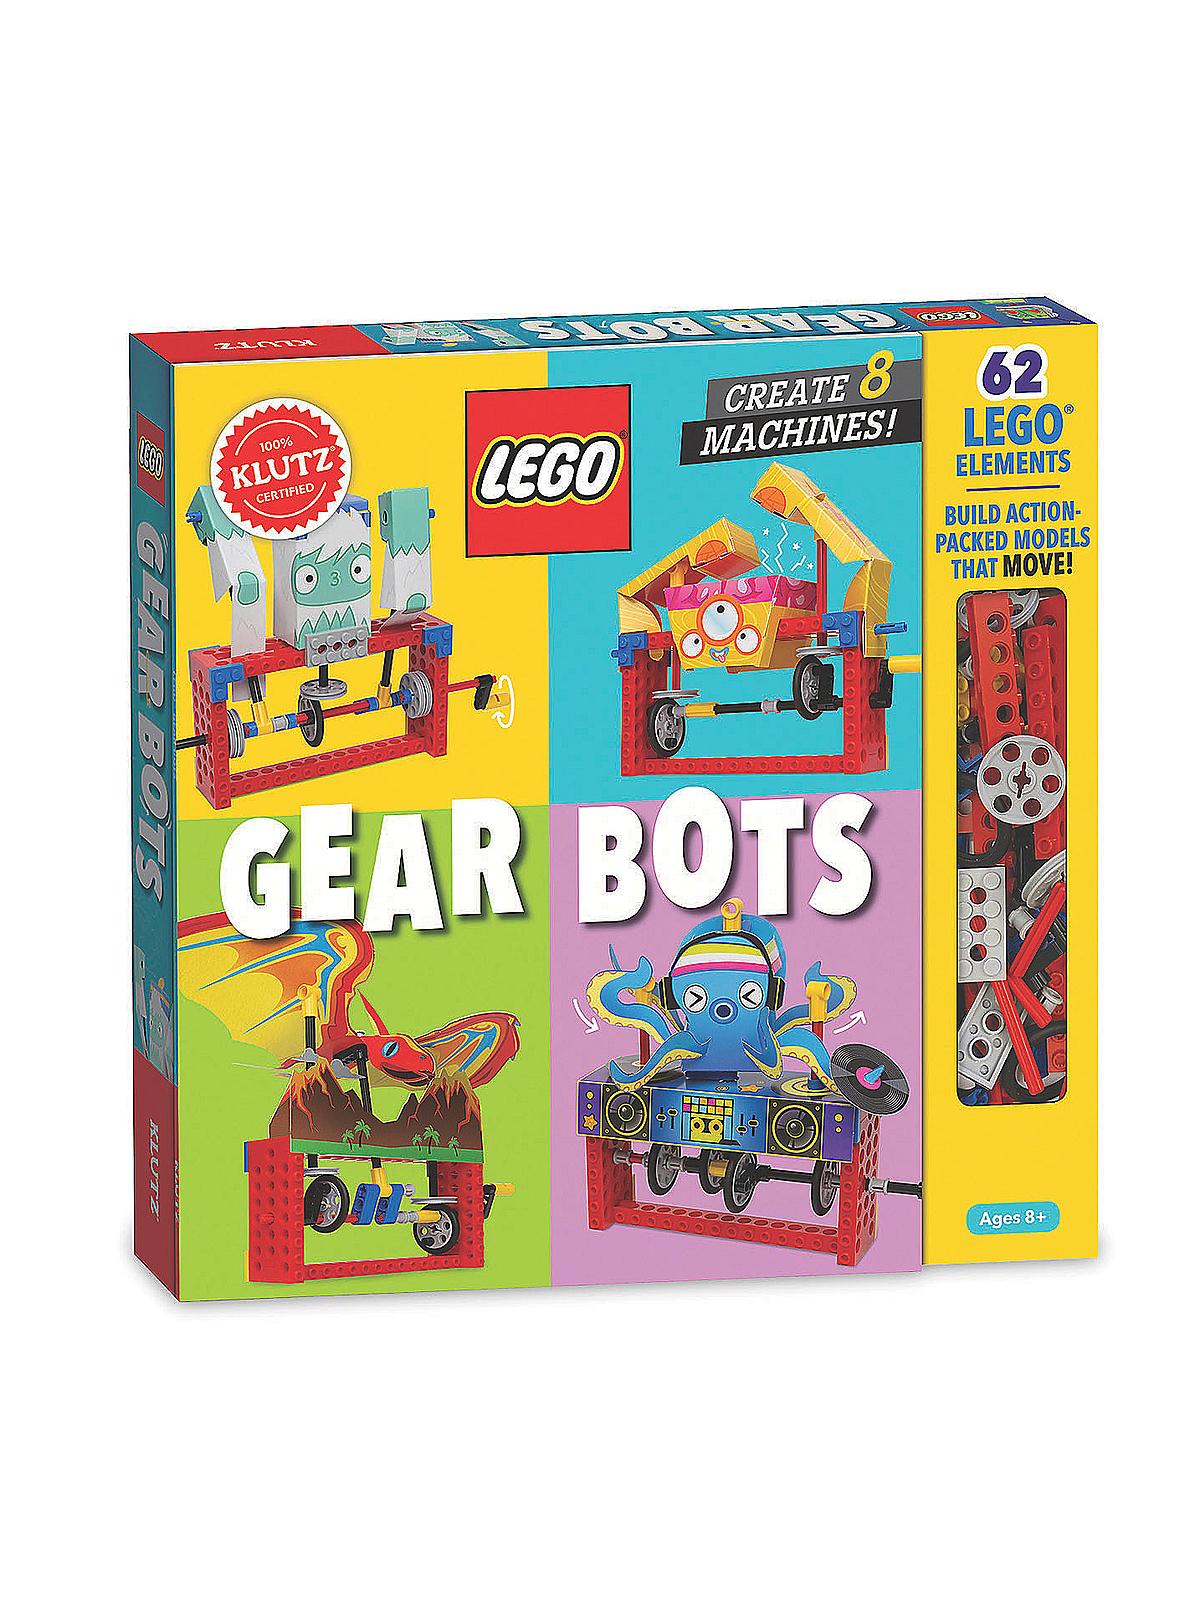 LEGO Gear Bots Each